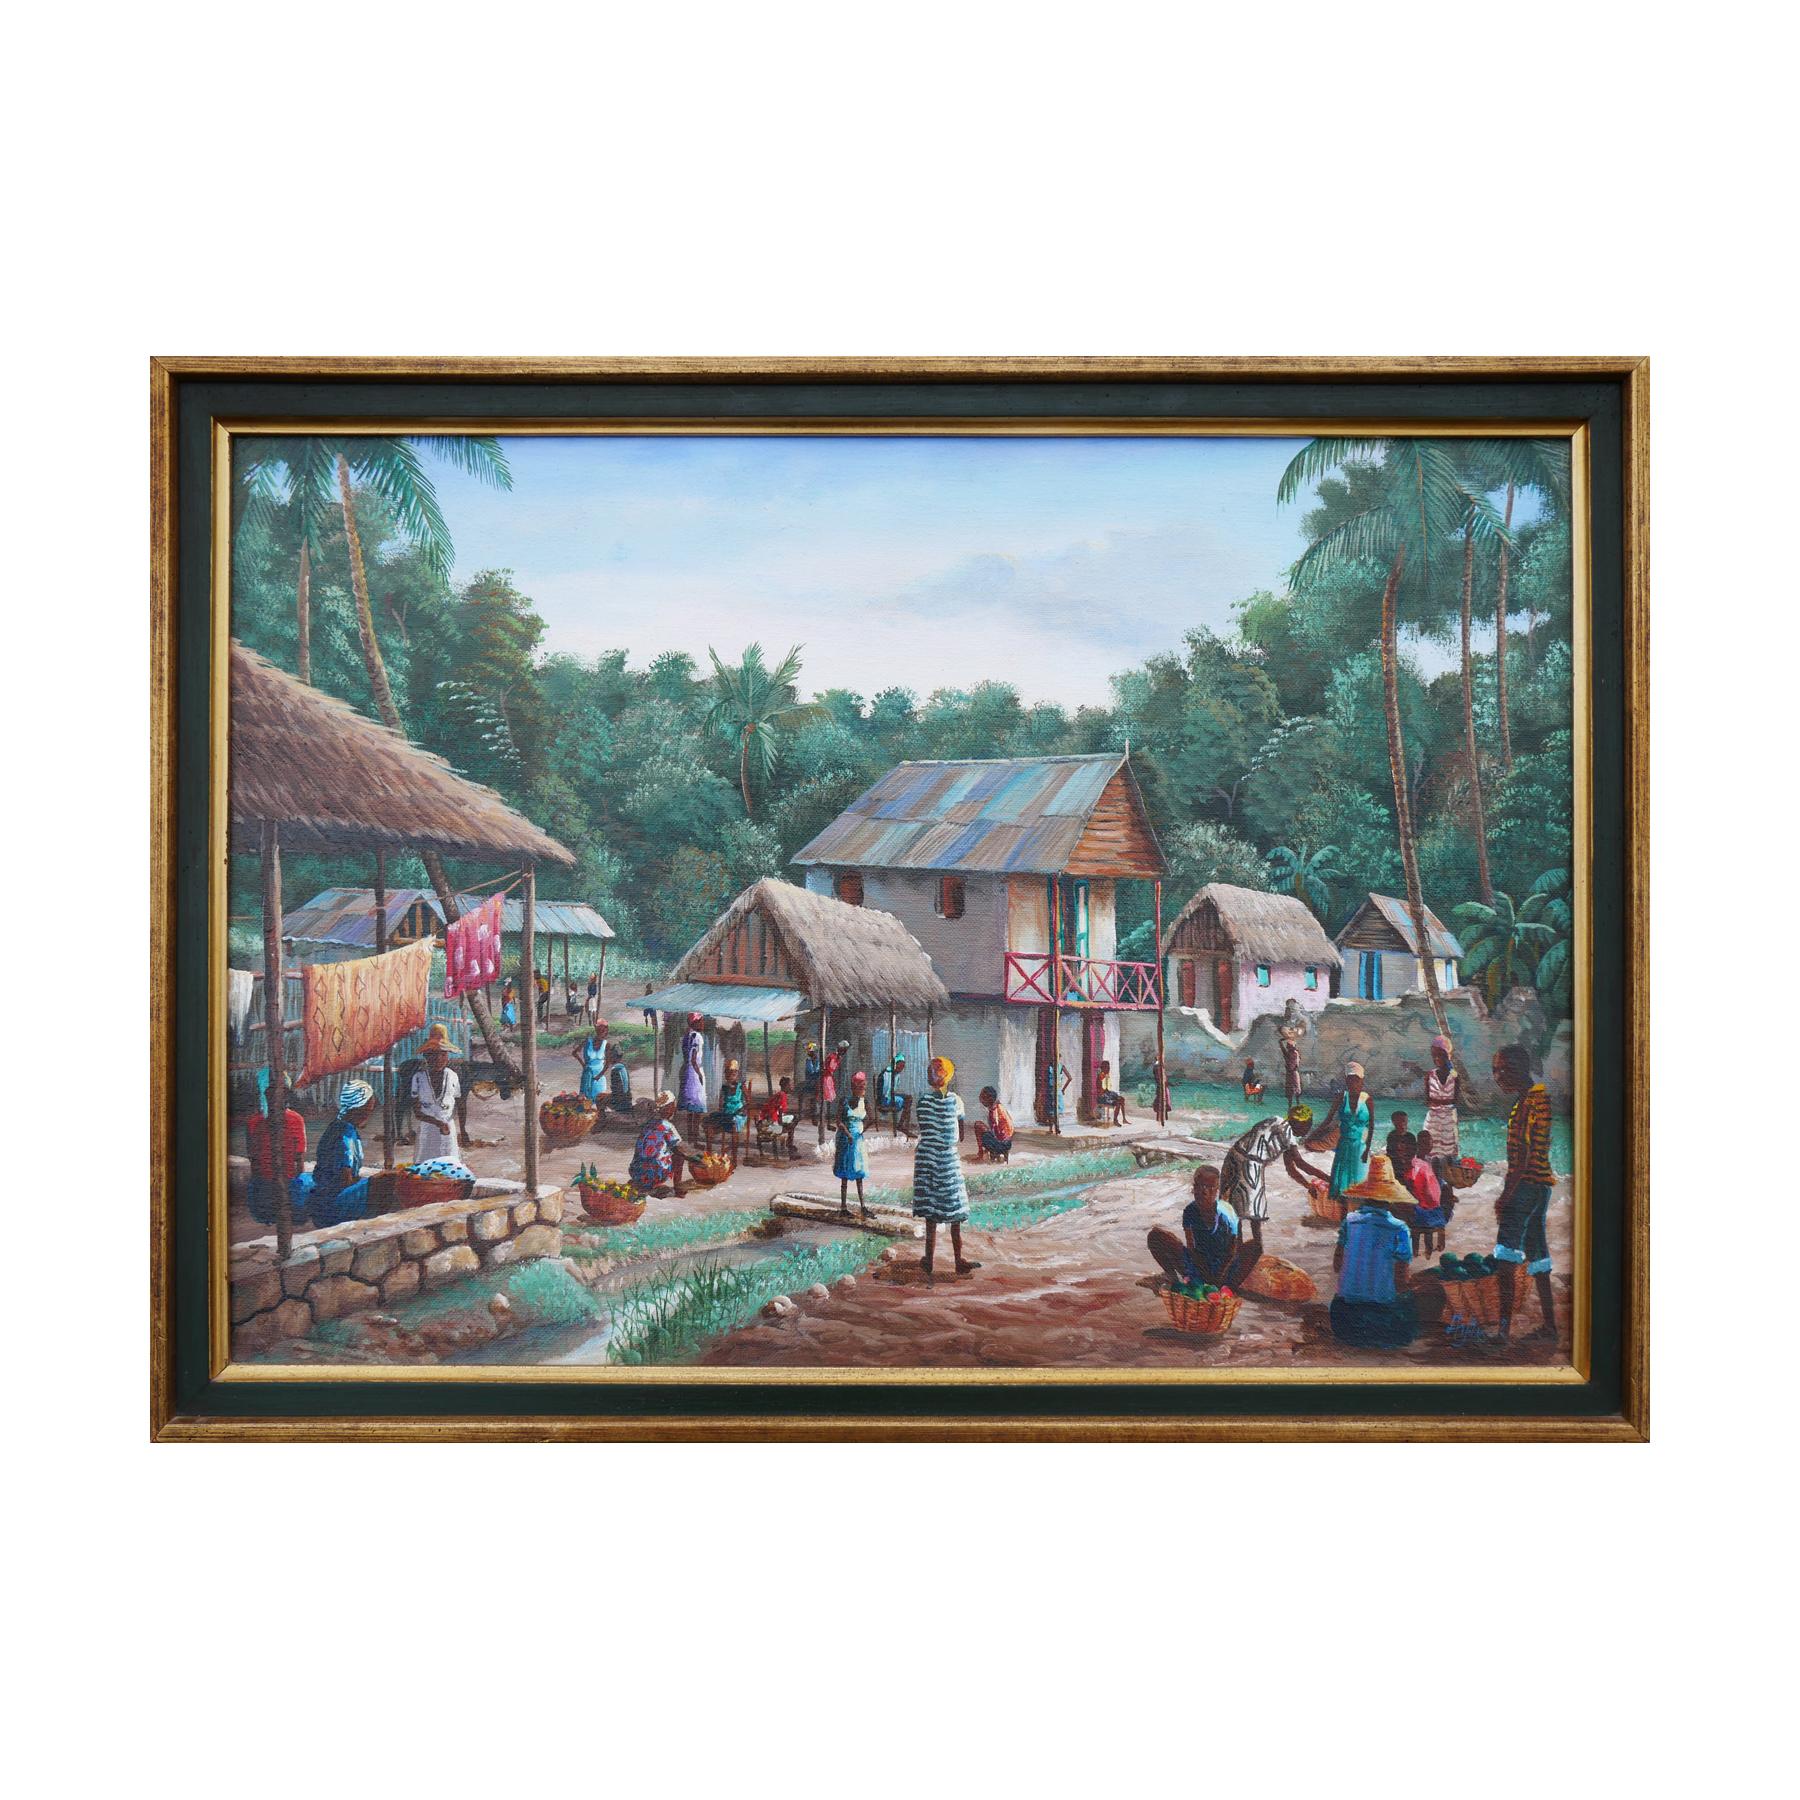 Peinture réaliste moderne de paysage de village rural aux tons verts et bleus - Painting de Jean-Felix Defournoy